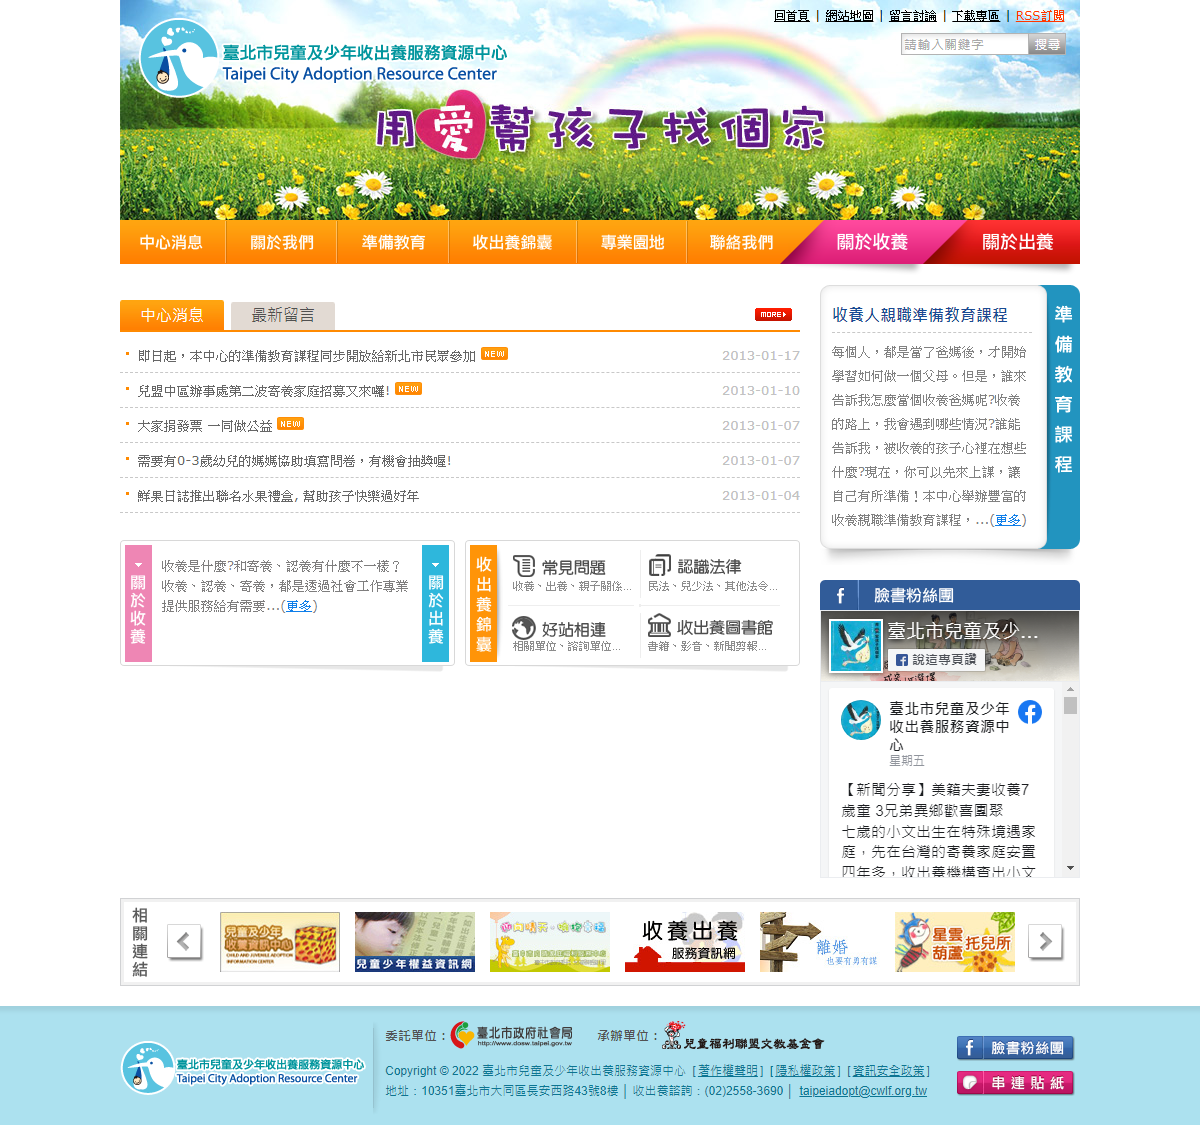 臺北市兒童及少年收出養服務資源中心首頁畫面